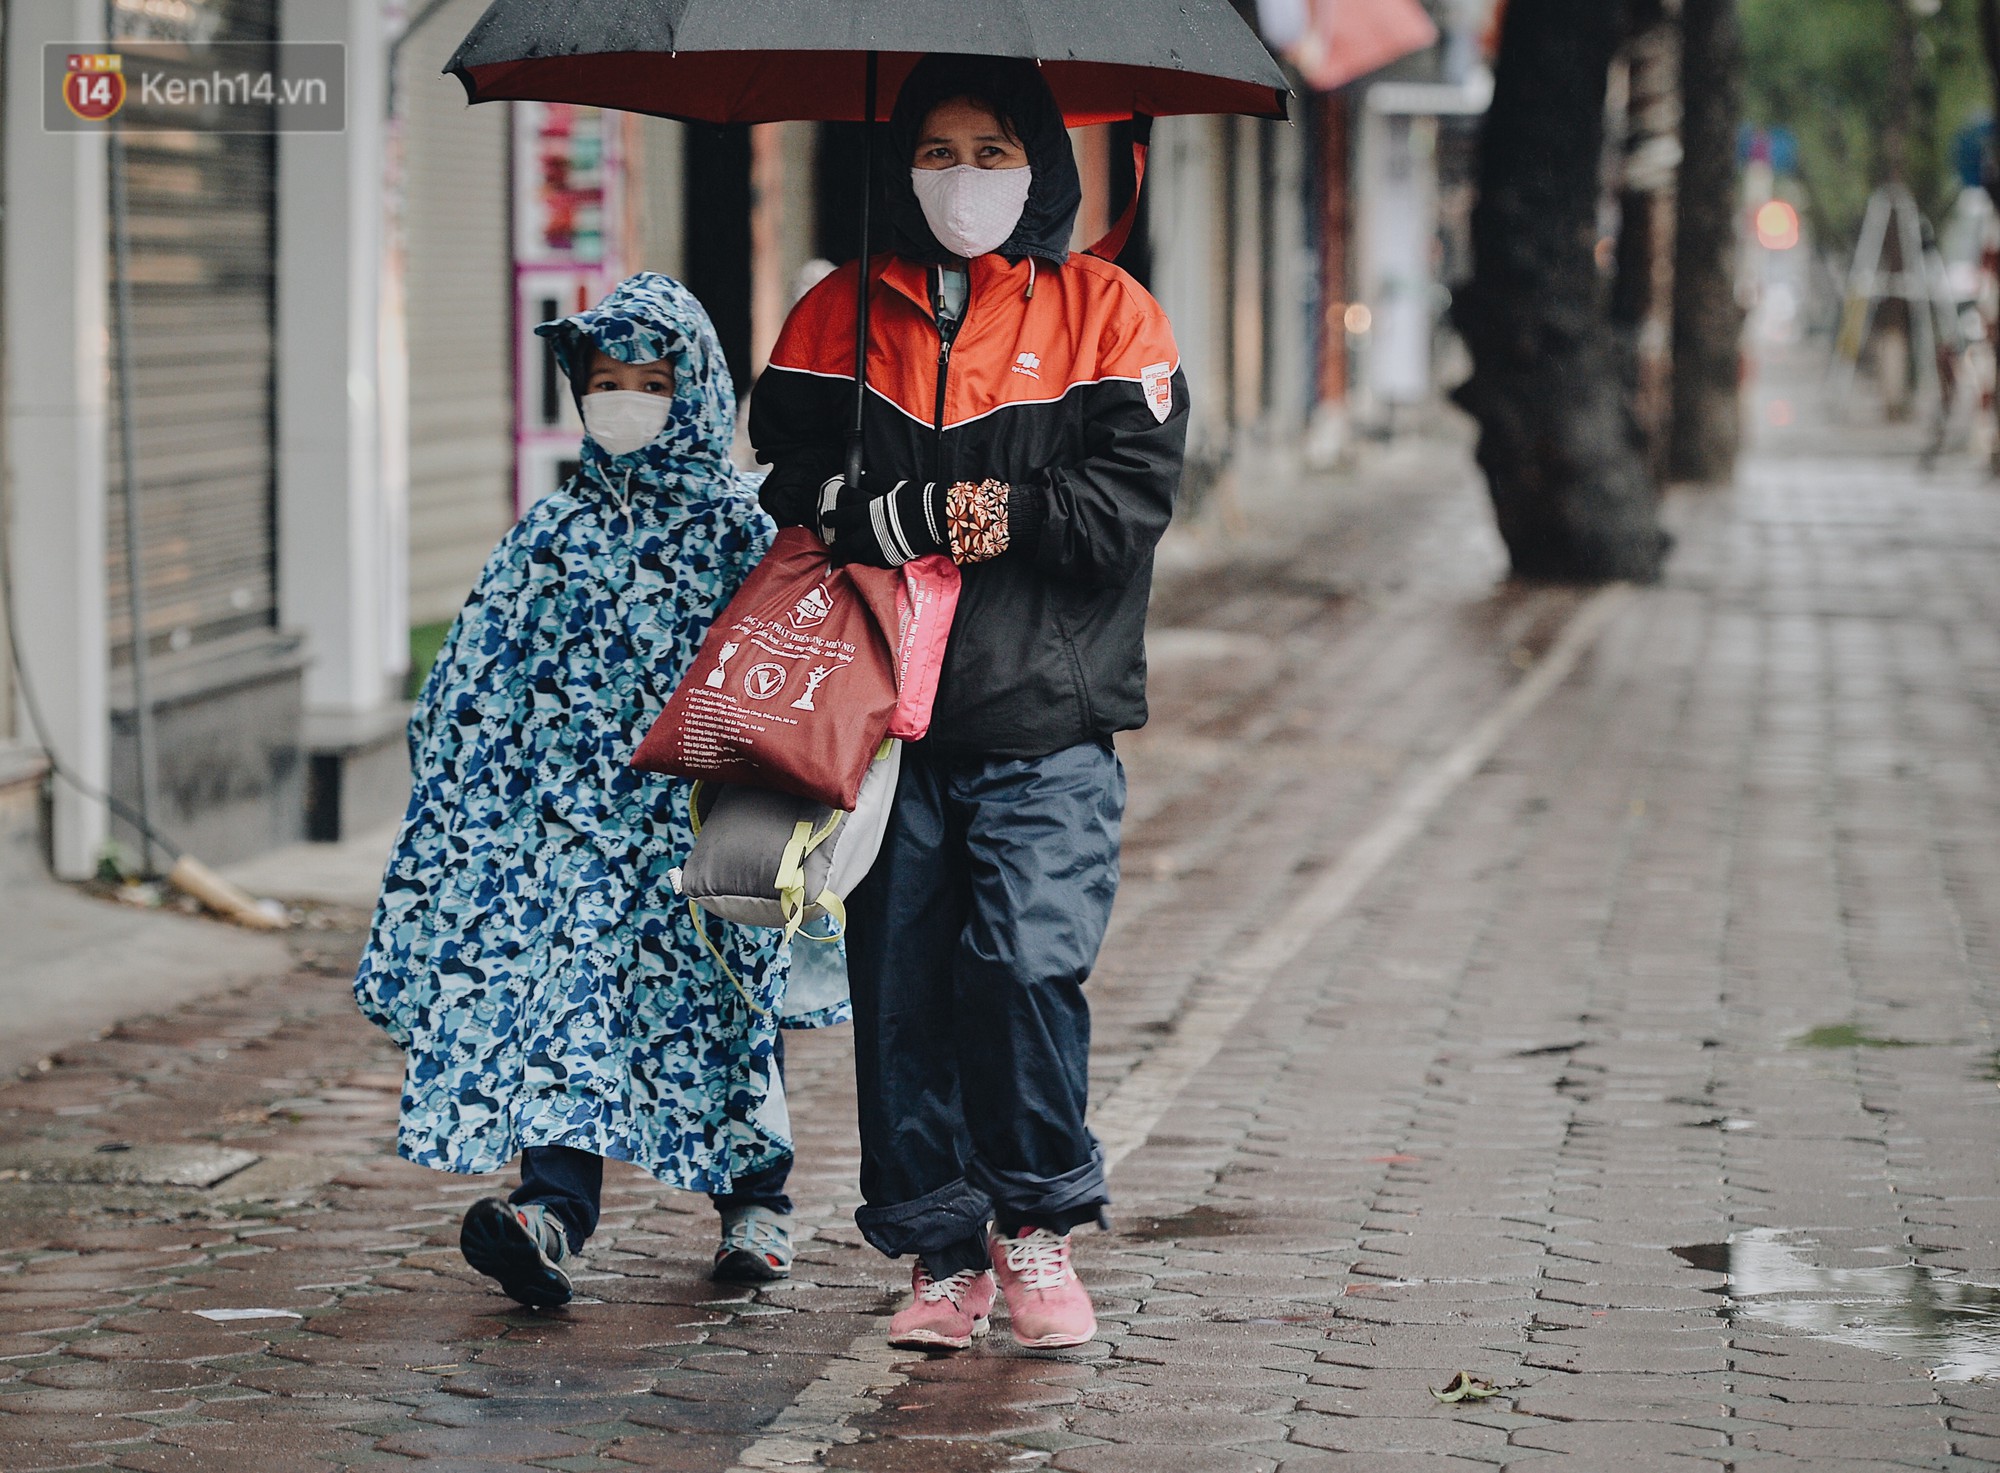 Chùm ảnh: Sau một đêm trở gió Hà Nội mưa lạnh xuống đến 17 độ C, người dân co ro ra đường-2